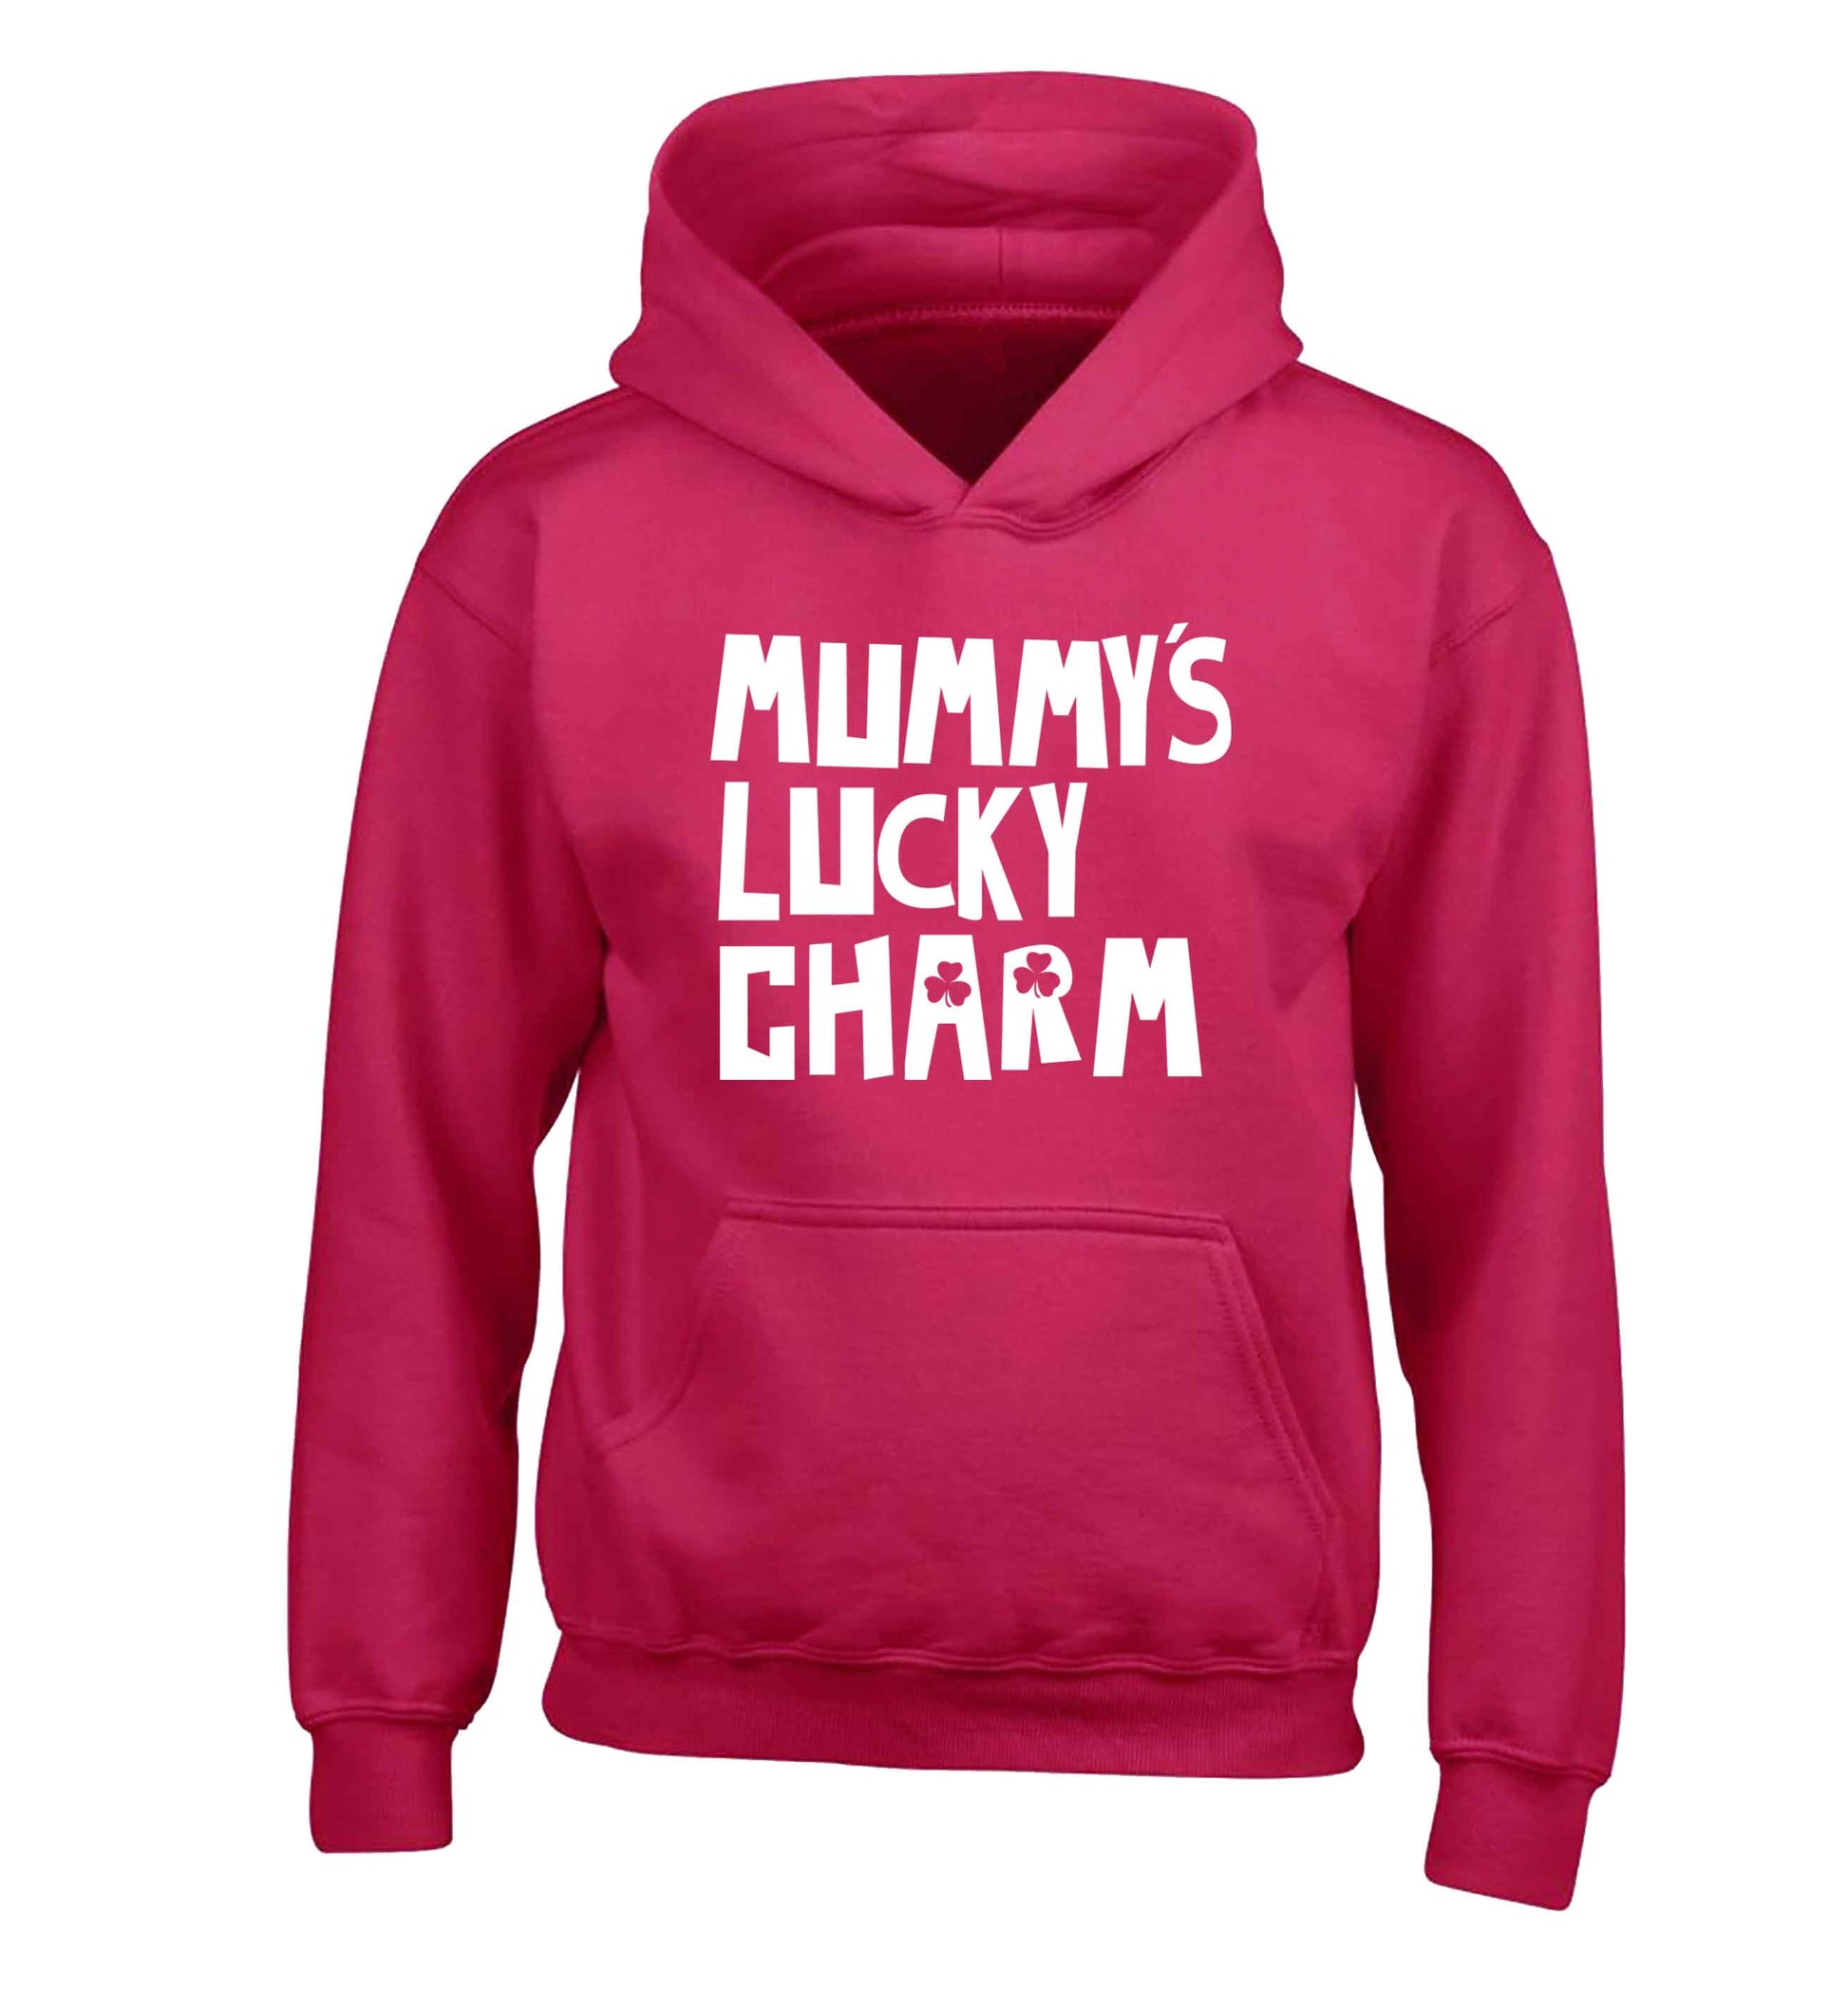 Mummy's lucky charm children's pink hoodie 12-13 Years